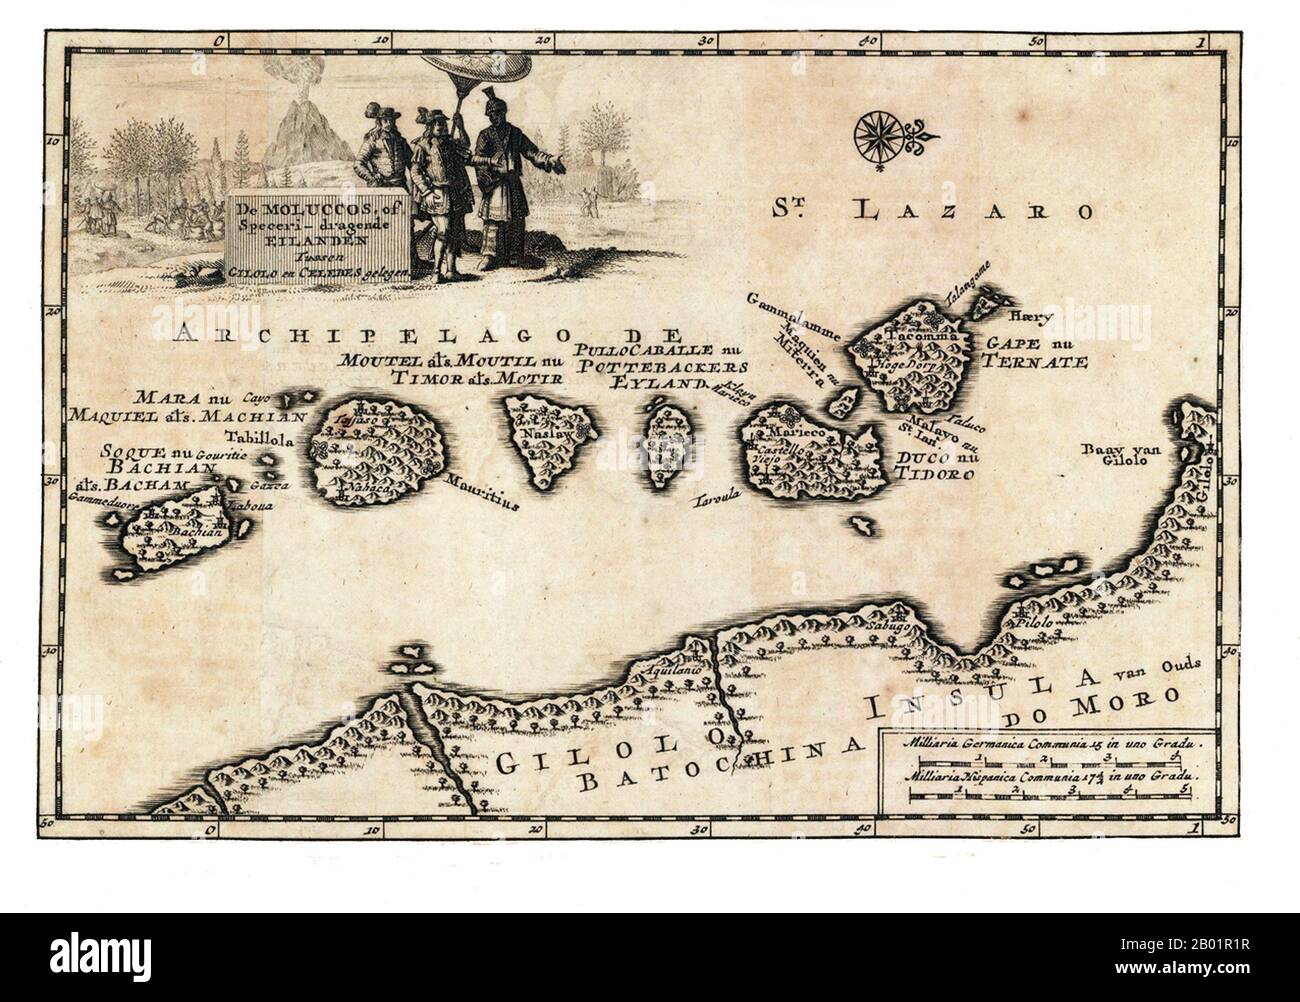 Indonesien/Niederlande: Frühe Karte der Maluku-Inseln. Kupferstich von Pieter Van der AA (1659-1733), um 1707. Die Maluku-Inseln (auch bekannt als Molukken, Molukken-Inseln und Gewürzinseln) sind ein Archipel, der Teil Indonesiens und der größeren maritimen Region Südostasien ist. Tektonisch befinden sie sich auf der Halmahera-Platte innerhalb der Molucca Sea Collision Zone. Geografisch liegen sie östlich von Sulawesi (Celebes), westlich von Neuguinea und nördlich und östlich von Timor. Die meisten Inseln sind bergig, einige mit aktiven Vulkanen, und genießen ein feuchtes Klima Stockfoto